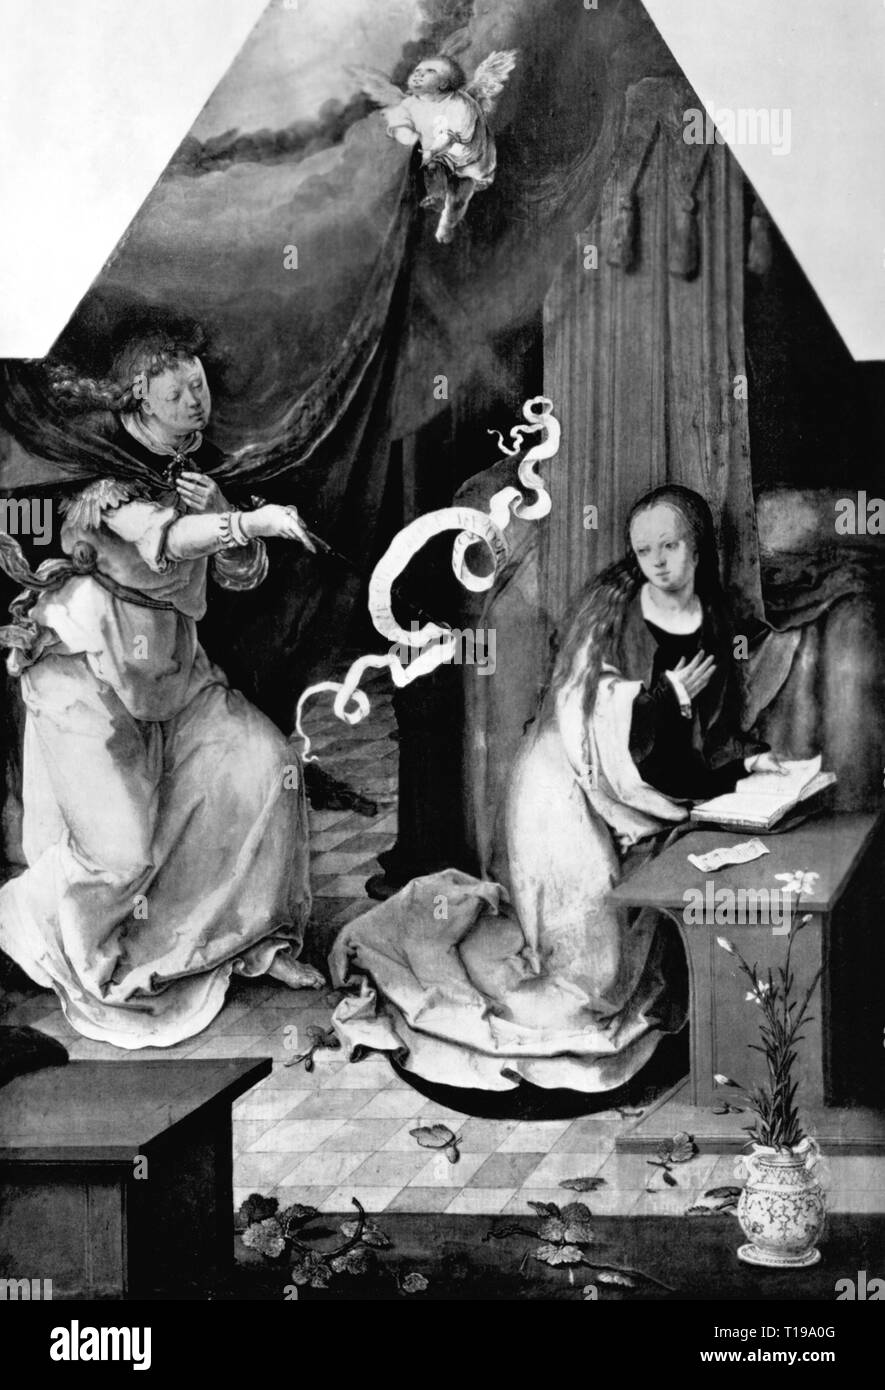 La religion, le christianisme, l'Annonciation, 'Annonciation', peinture, par Lucas van Leyden (1494 - 1533), 1er tiers du xvie siècle, huile sur panneau, 42 x 29 cm, ancien pinacotheca, Munich, auteur de l'artiste n'a pas à être effacée Banque D'Images